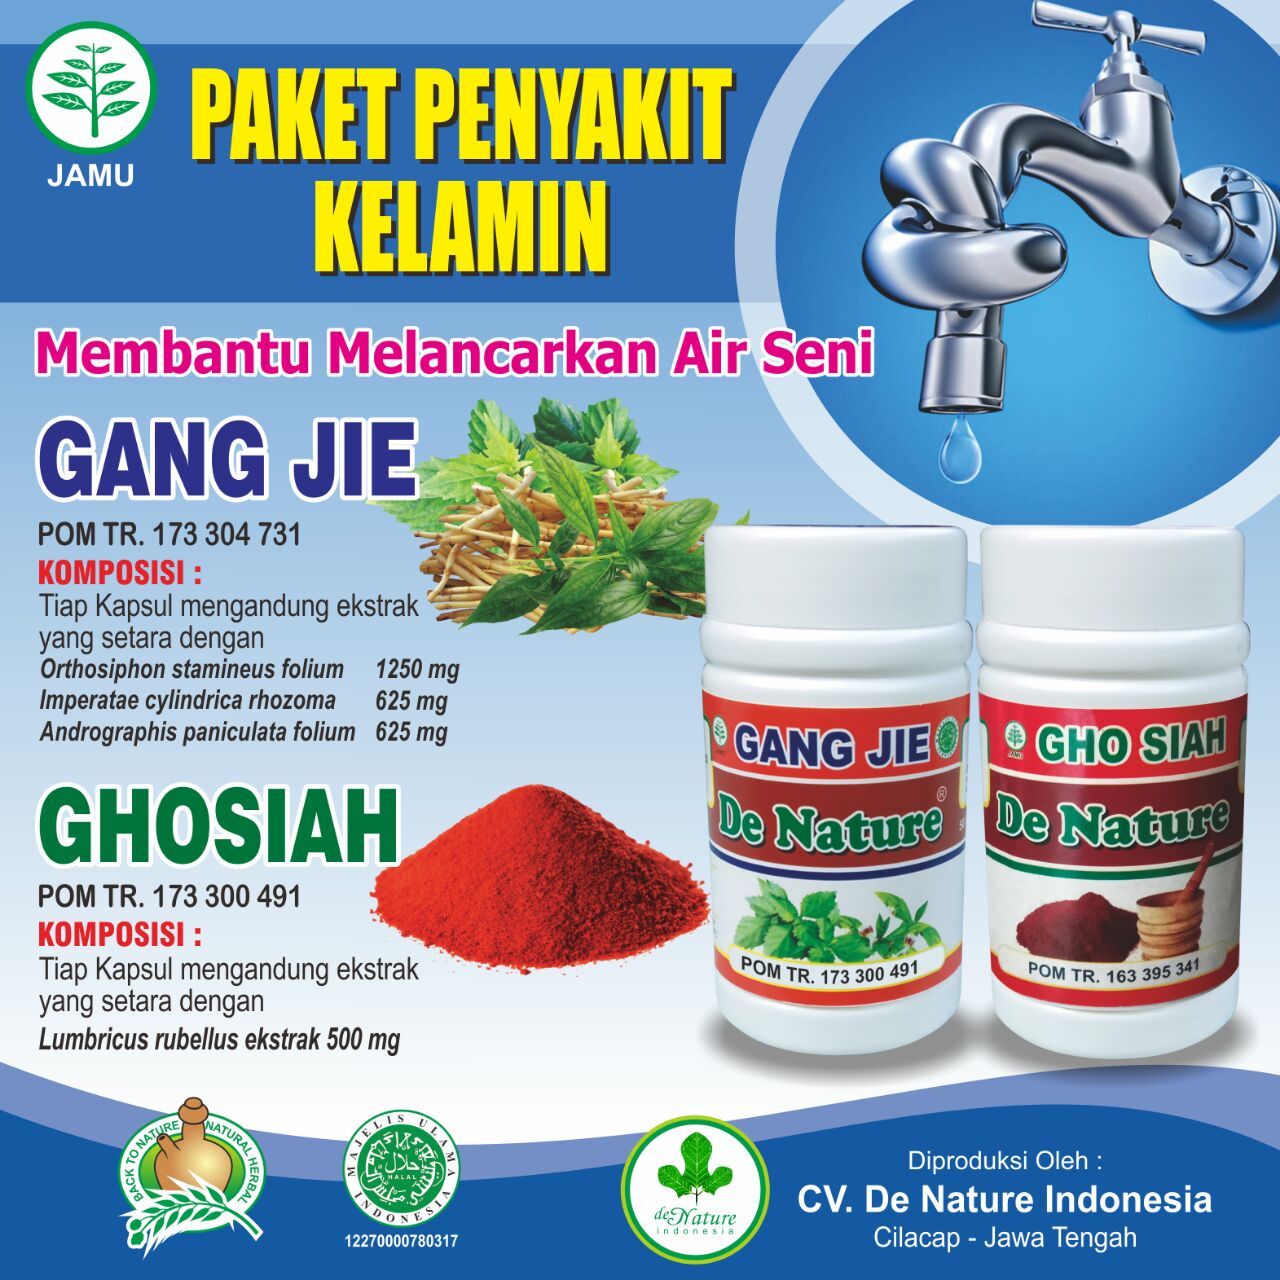 Alamat Agen Jual Obat Herbal De Nature di Surabaya